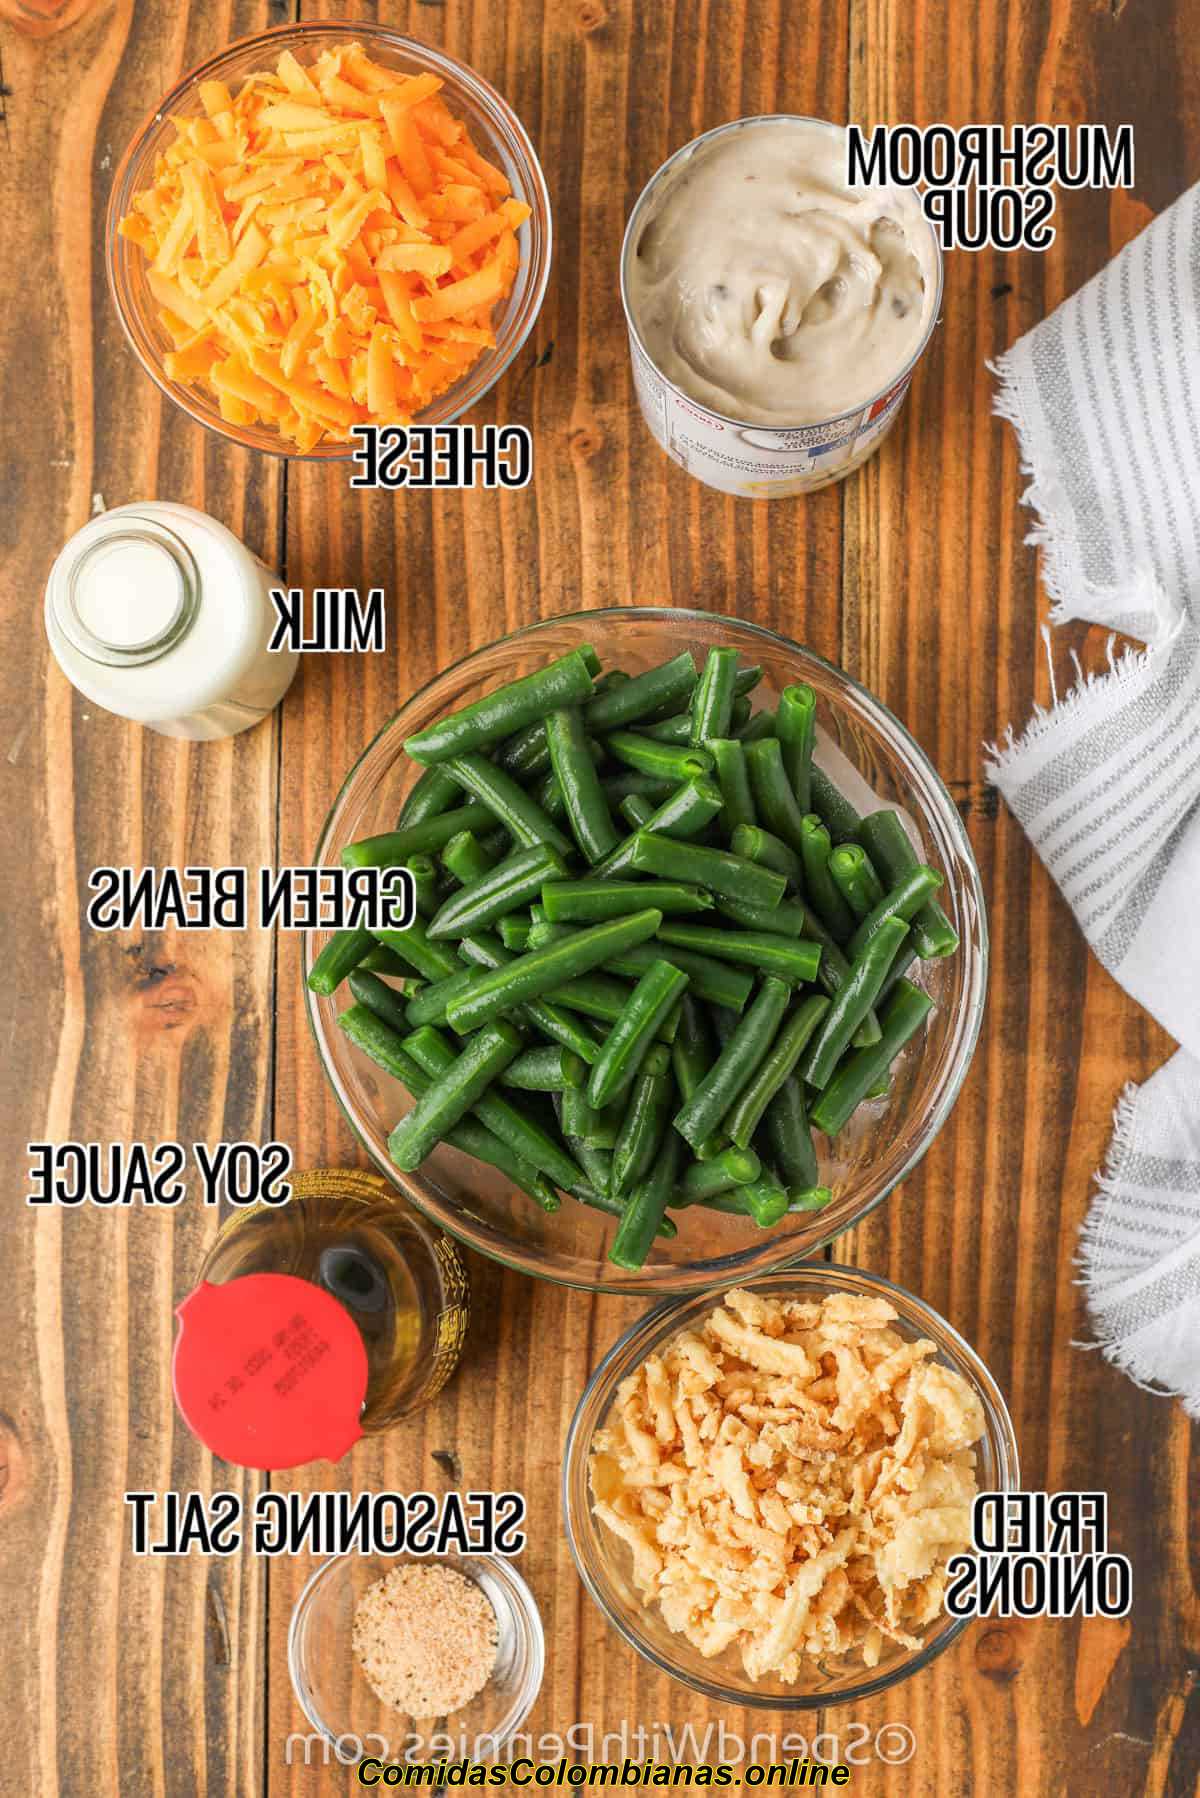 Ingrédients de la casserole de haricots verts dans des bols avec des étiquettes